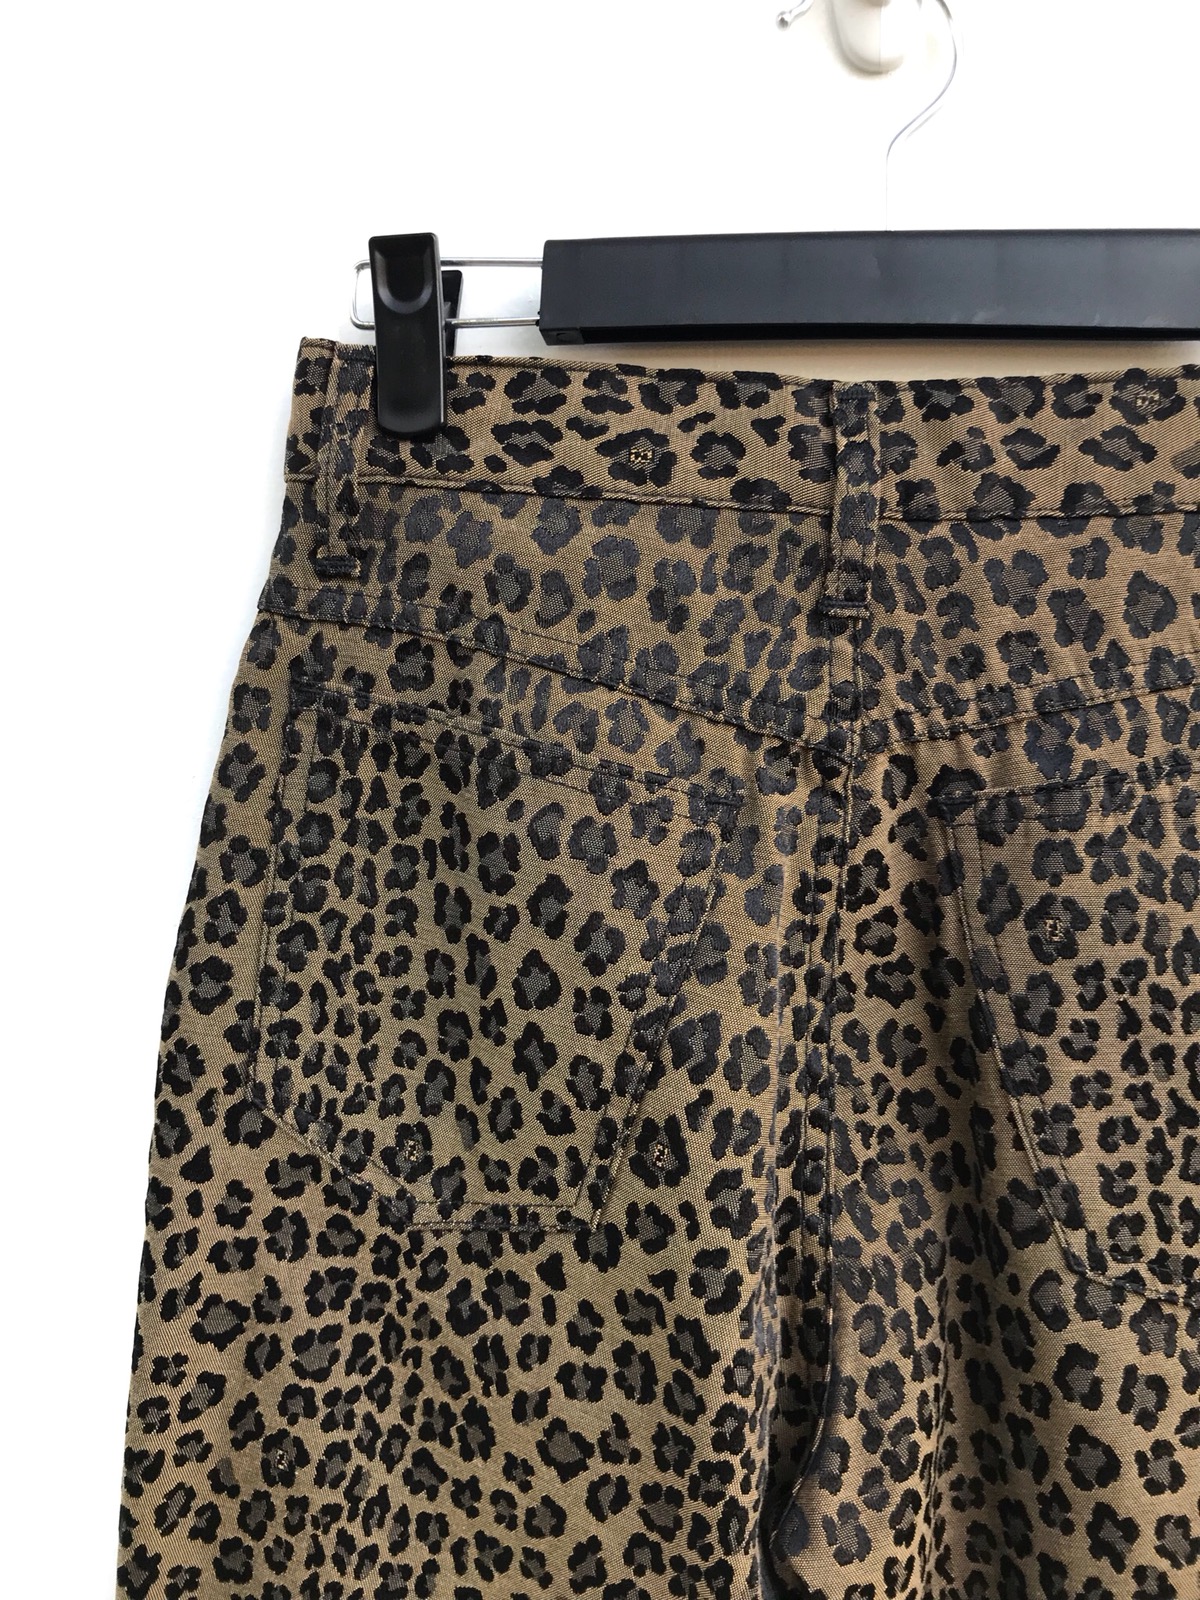 Authentic Fendi Leopard Print Trousers Pants - 6